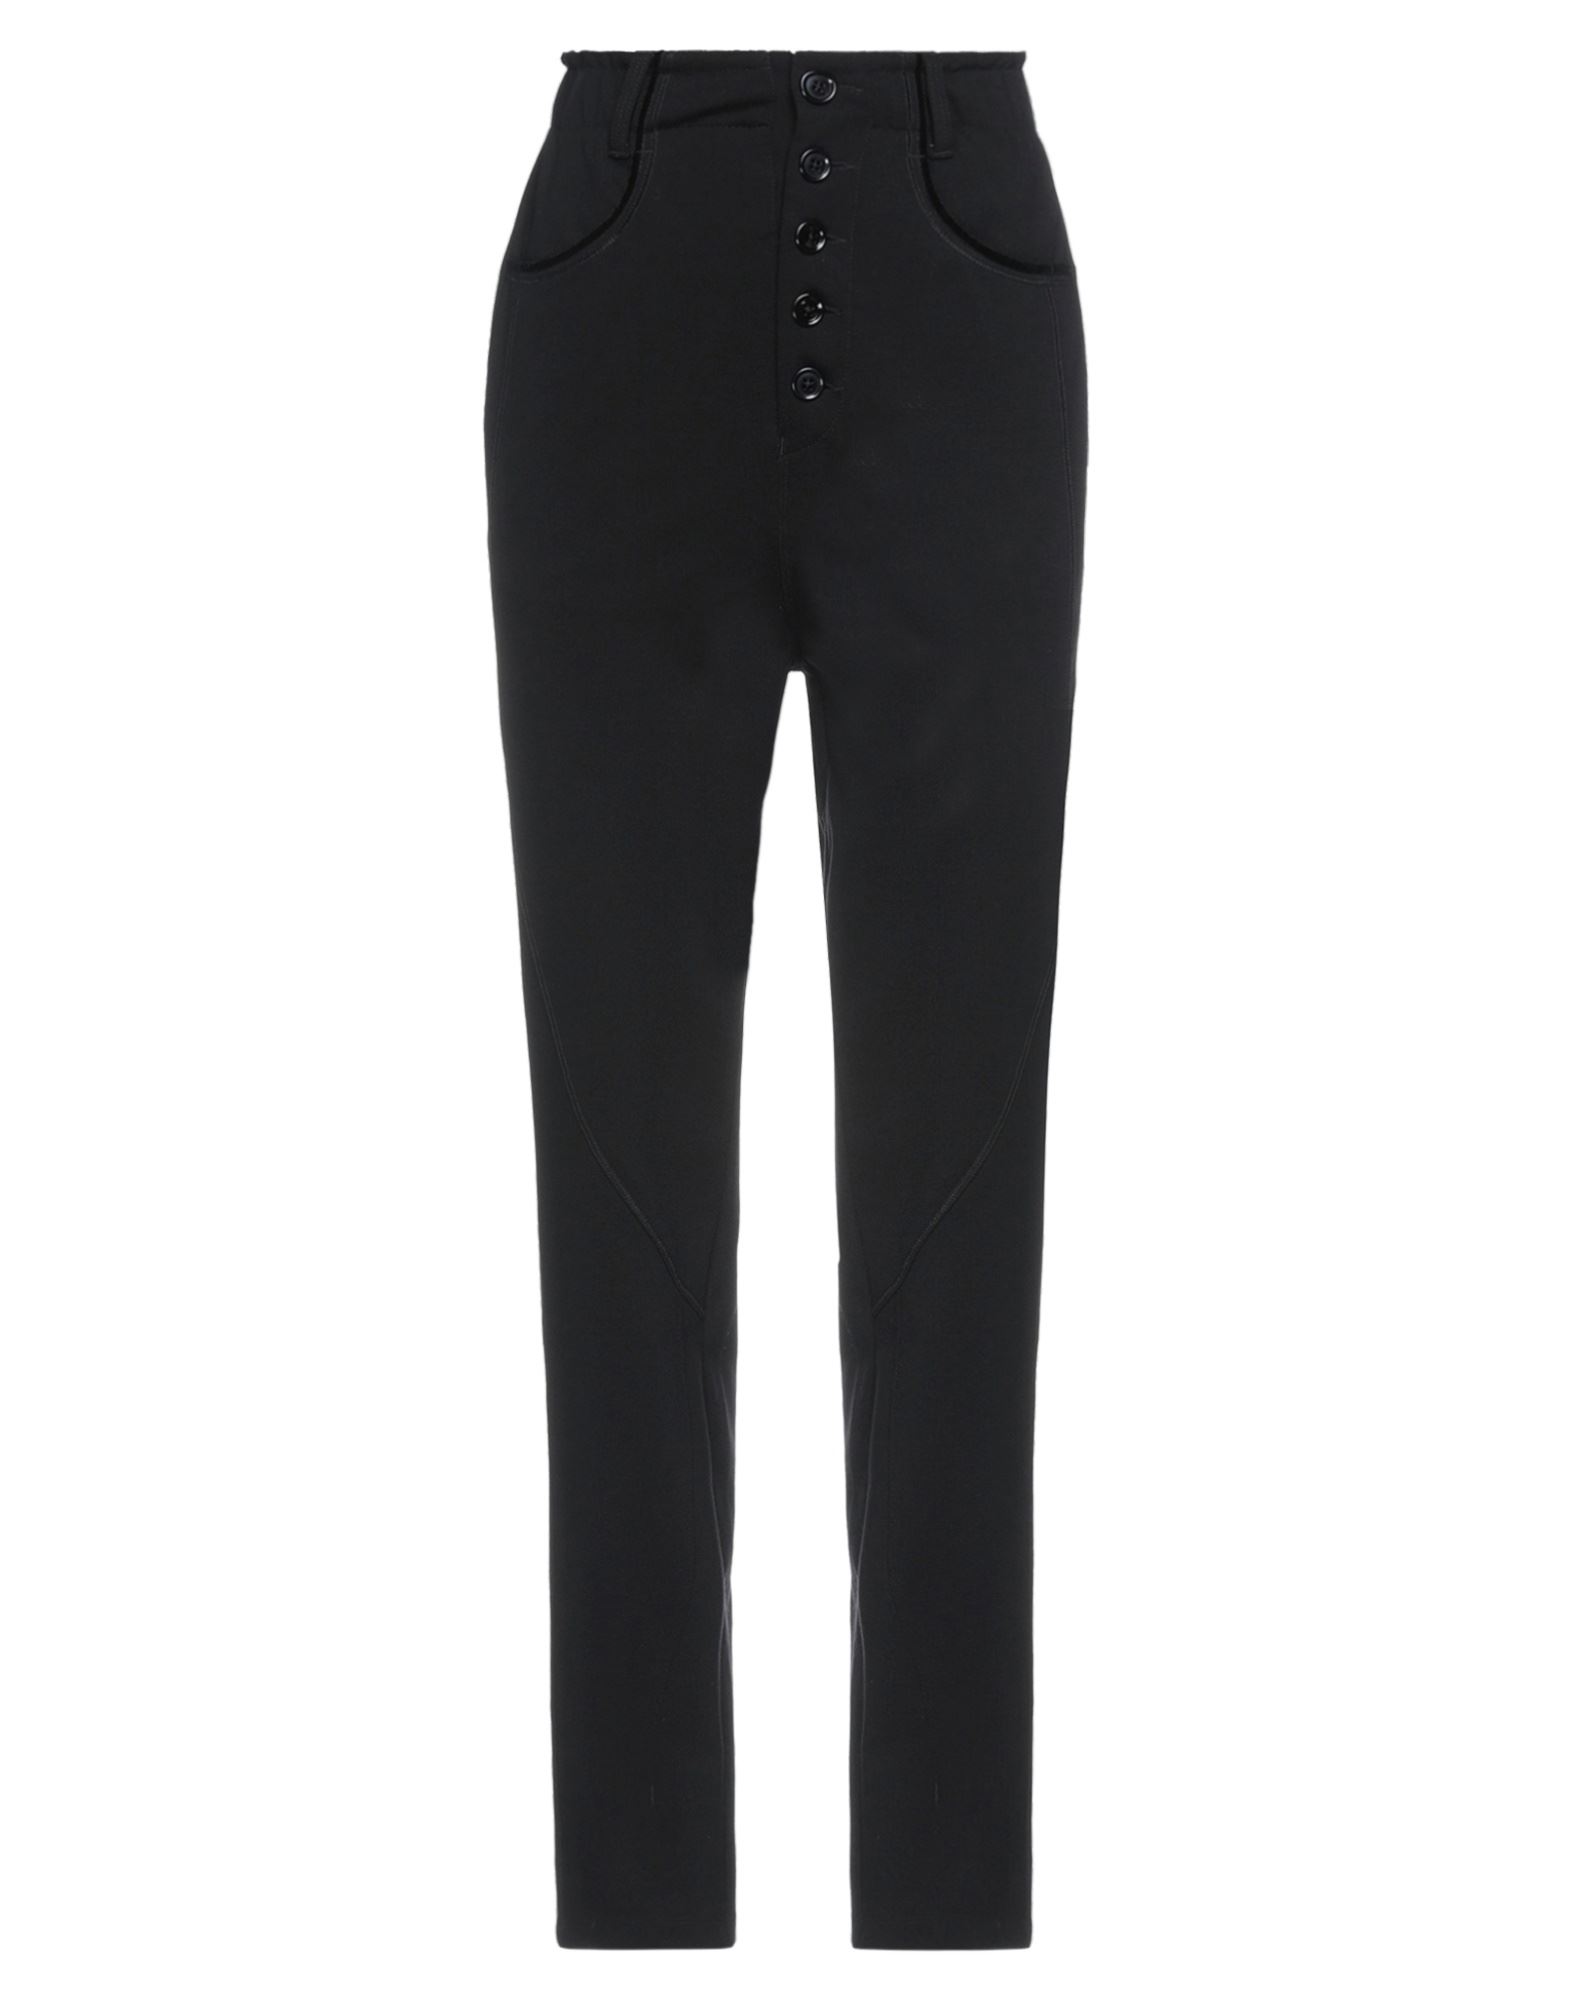 High Woman Pants Black Size 2 Rayon, Nylon, Elastane